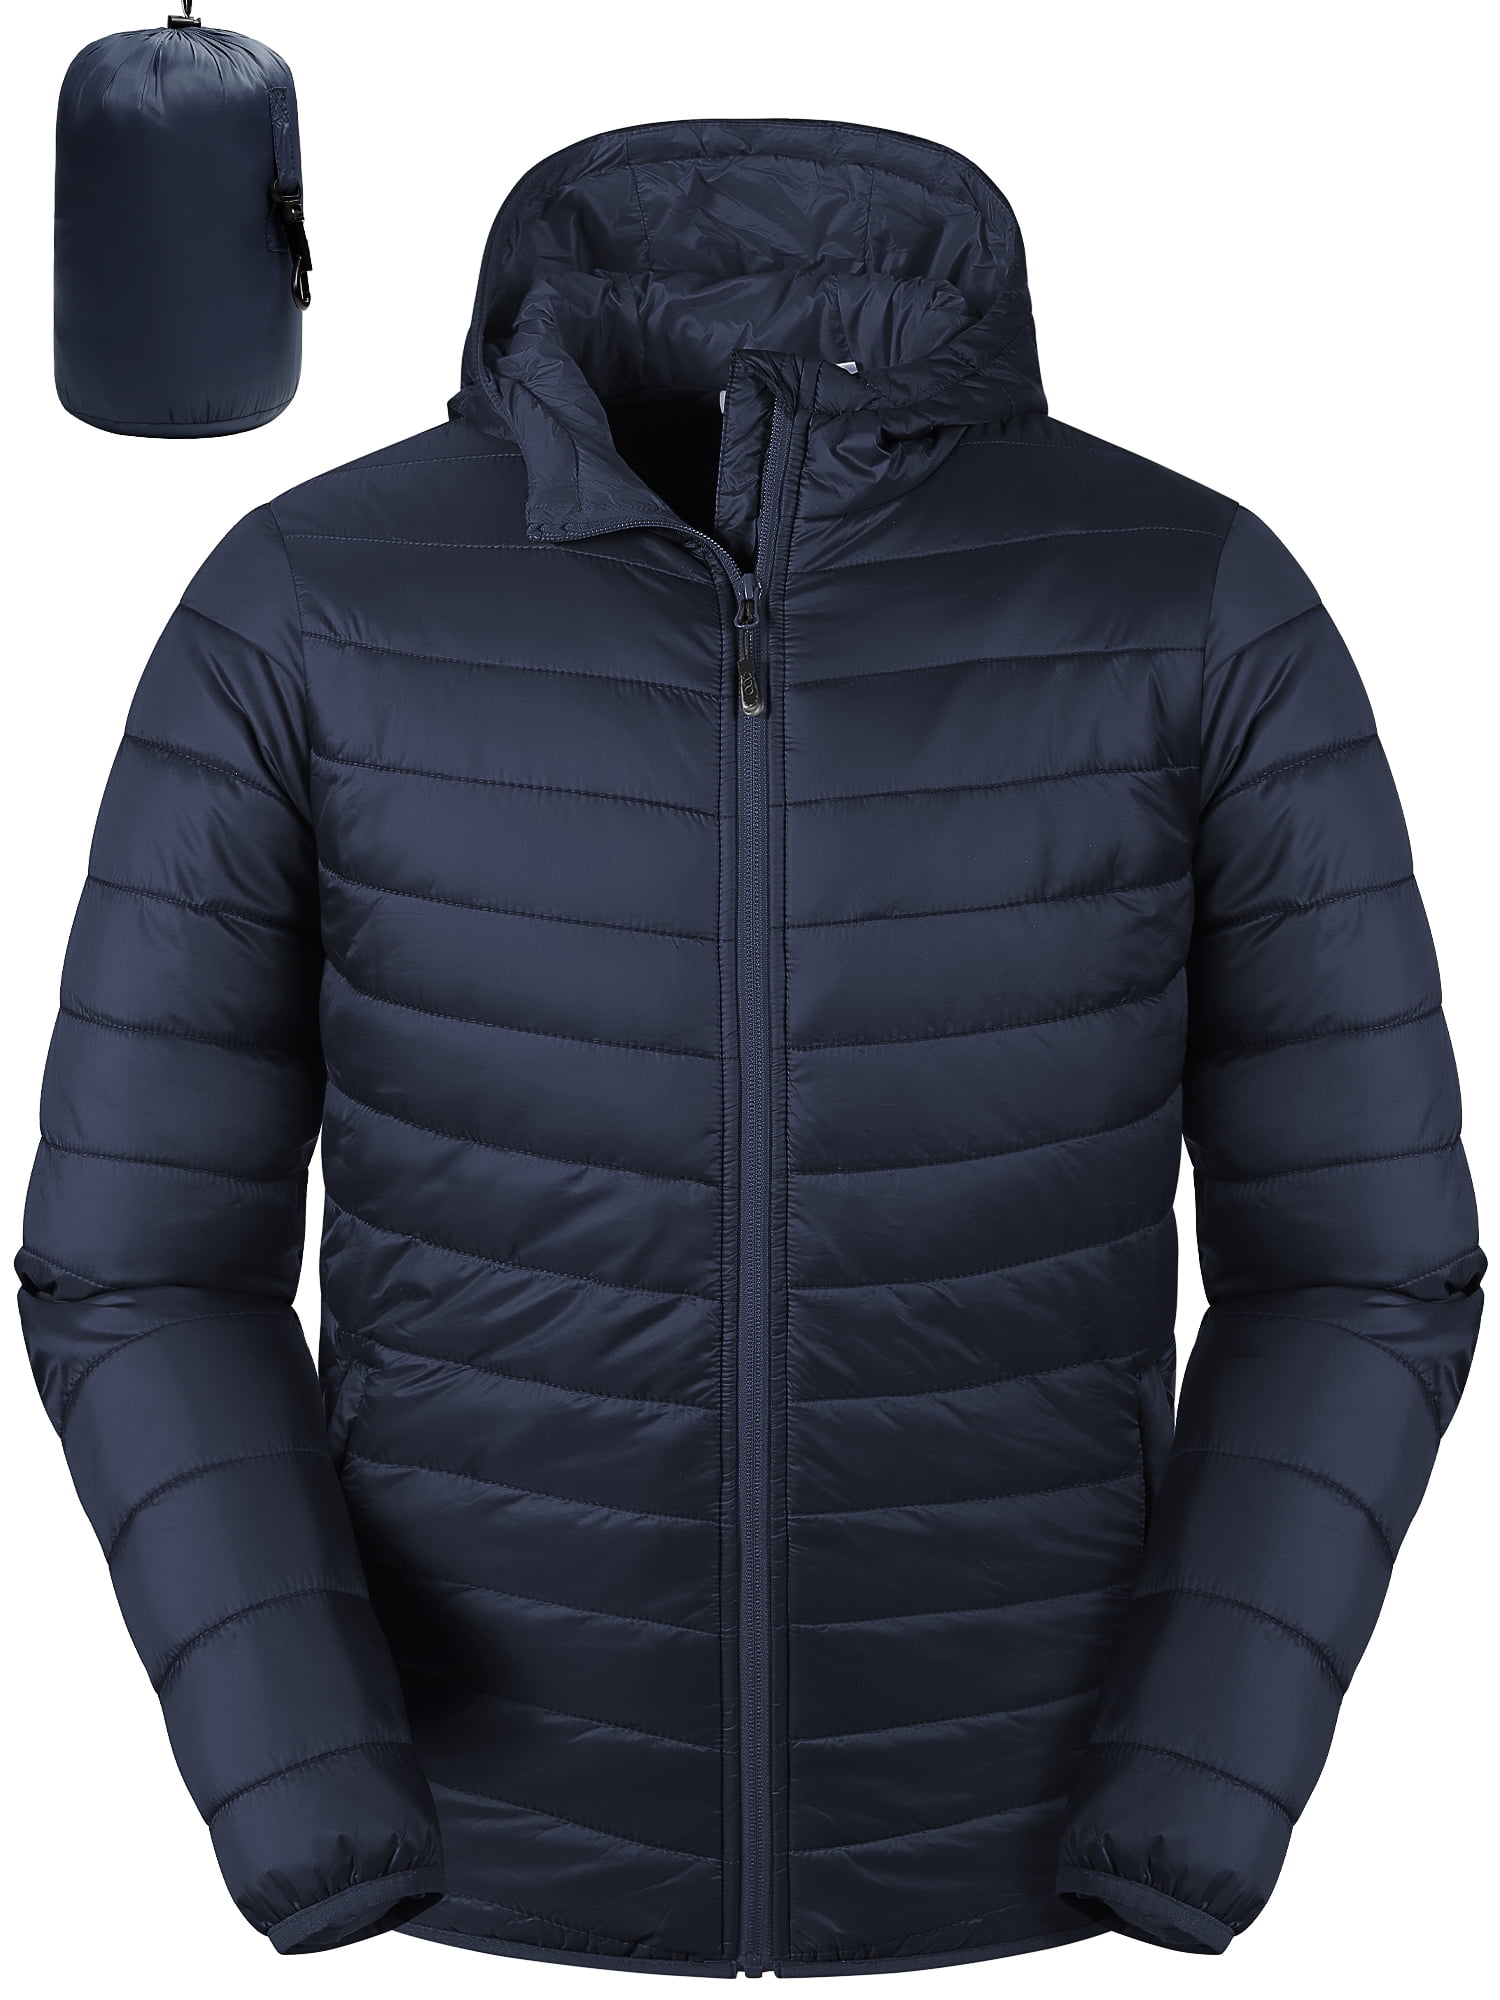 33,000ft Men's Lightweight Packable Insulated Puffer Winter Jacket